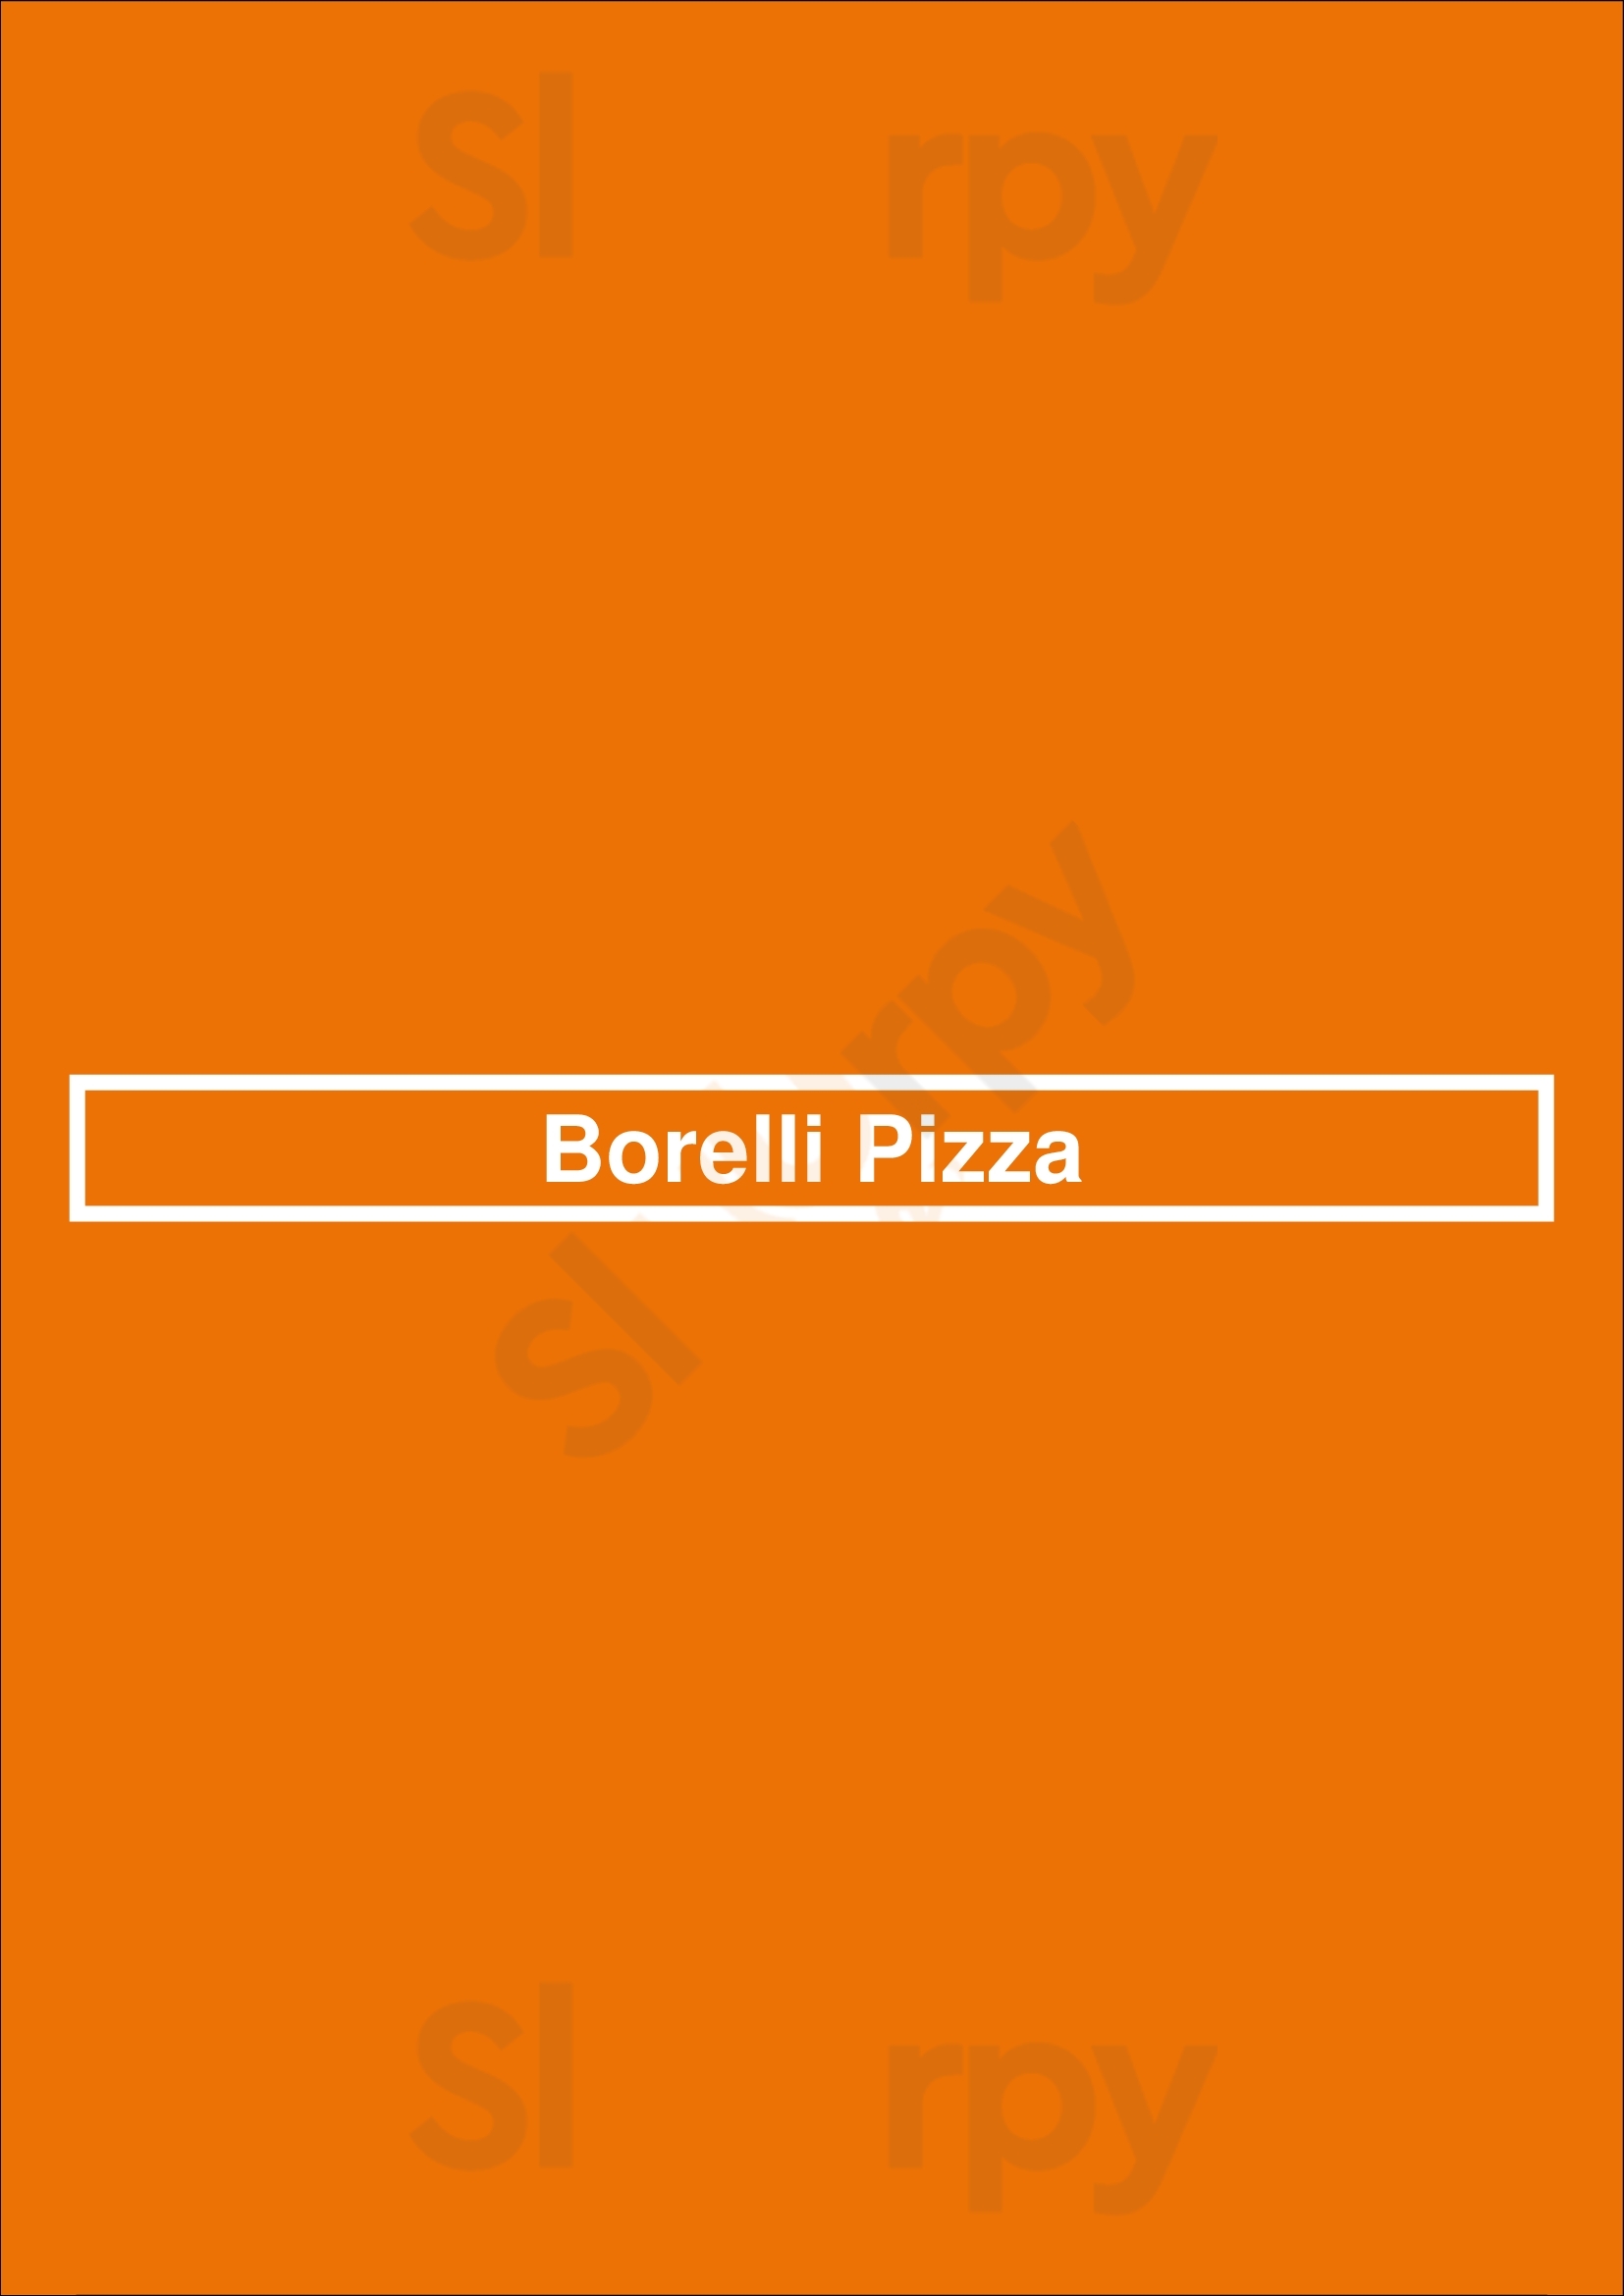 Borelli Pizza Chicago Menu - 1